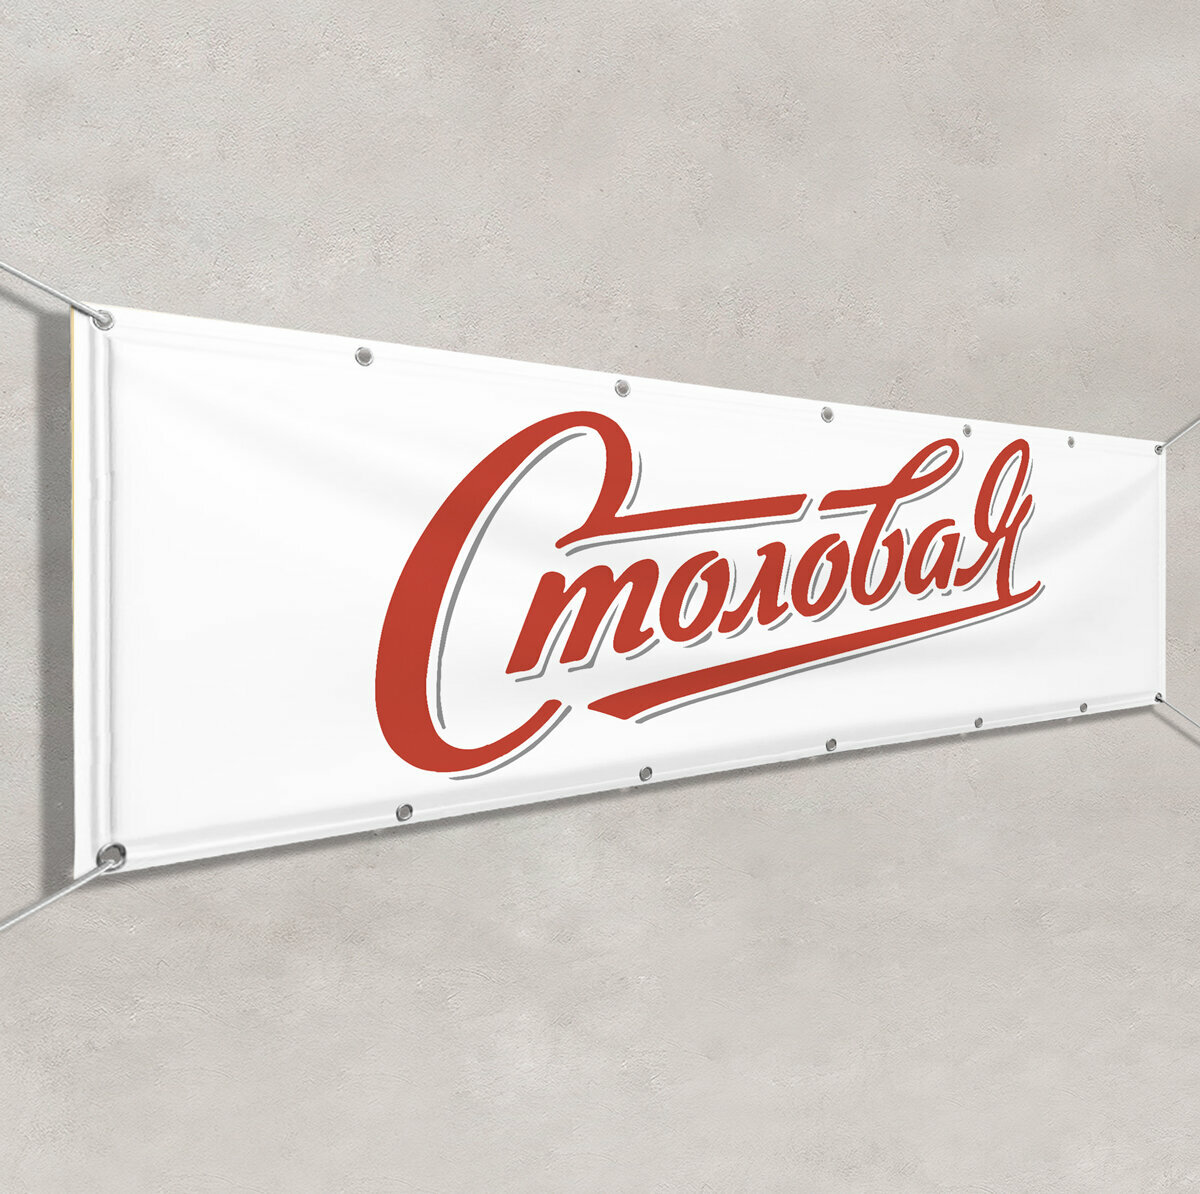 Баннер "Столовая" / Вывеска, растяжка для рекламы столовой, буфета / 3x0.5 м.